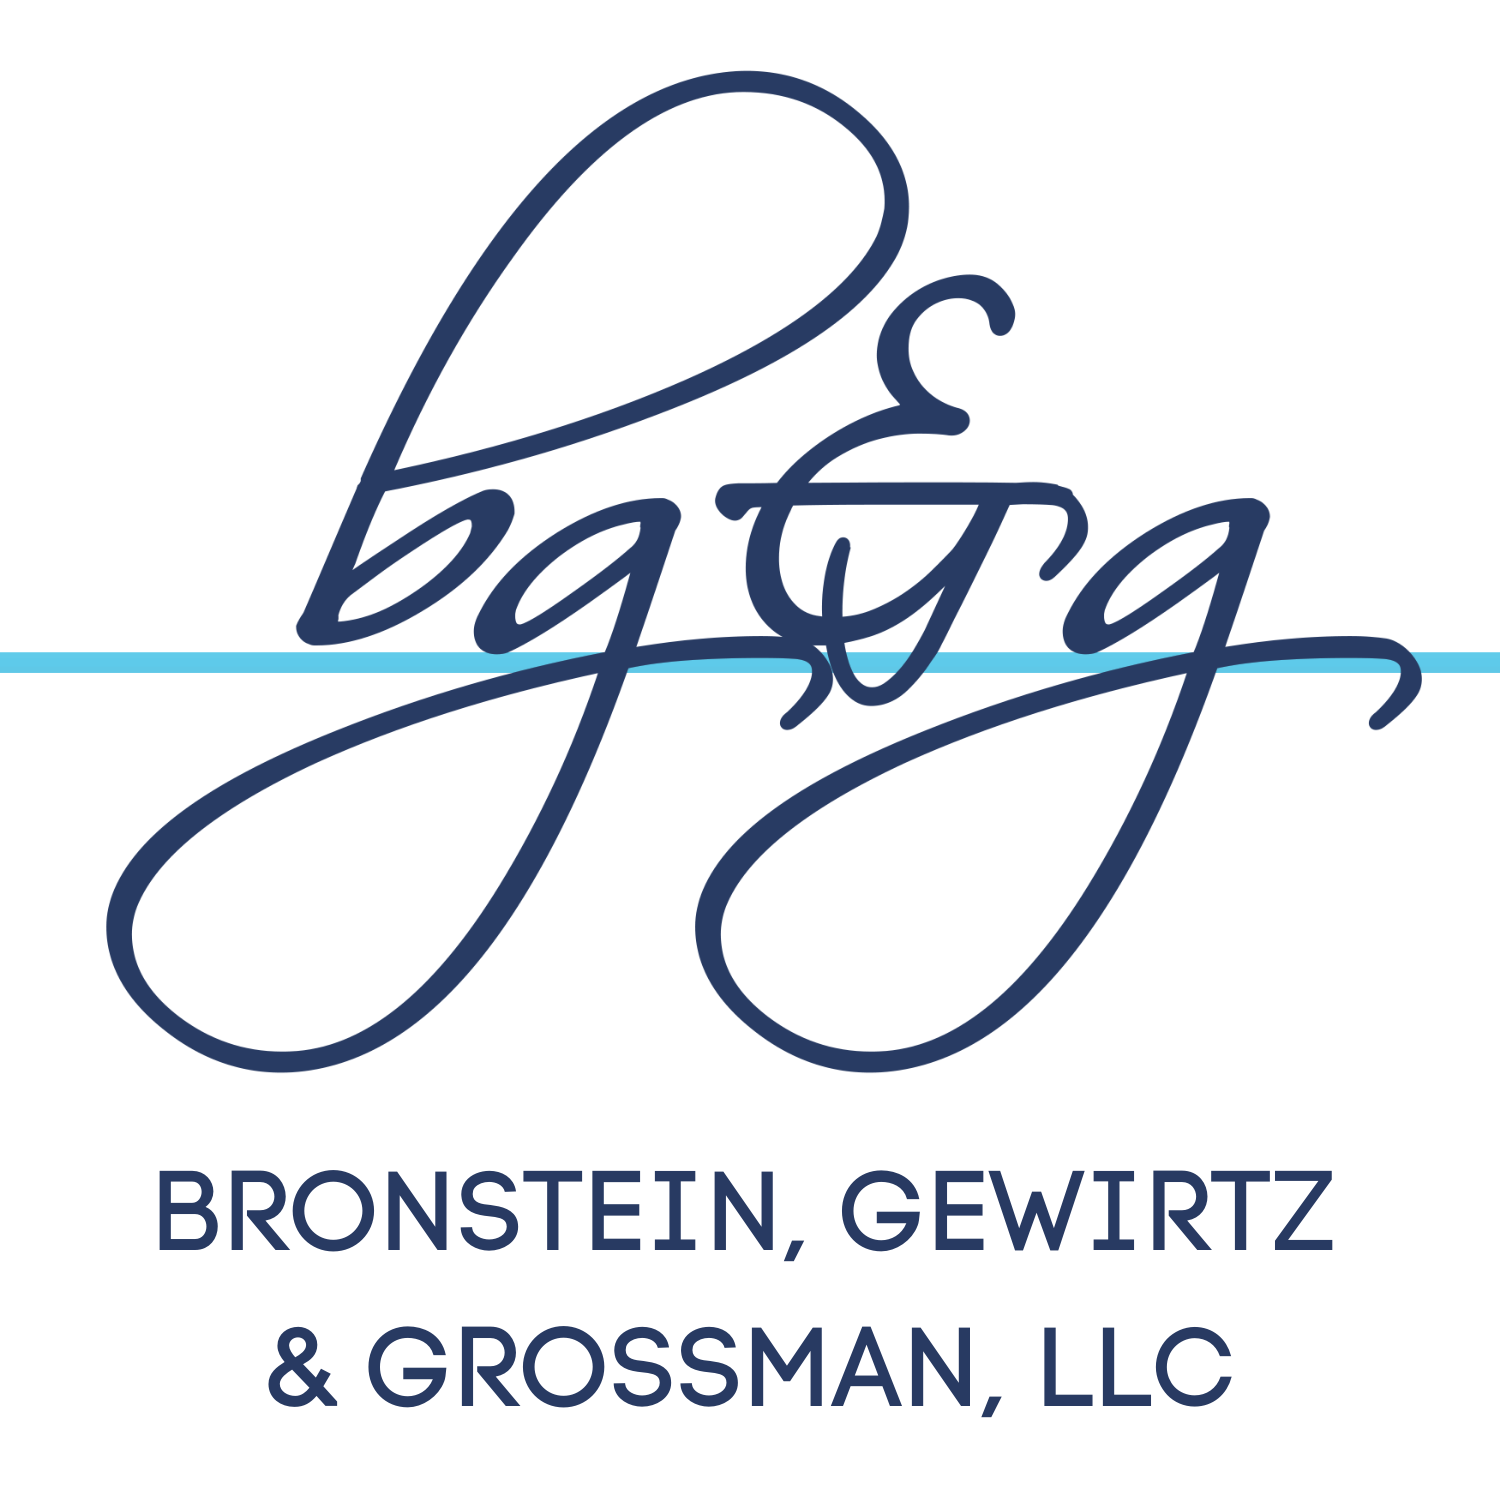 Bronstein, Gewirtz and Grossman, LLC, Friday, July 30, 2021, Press release picture